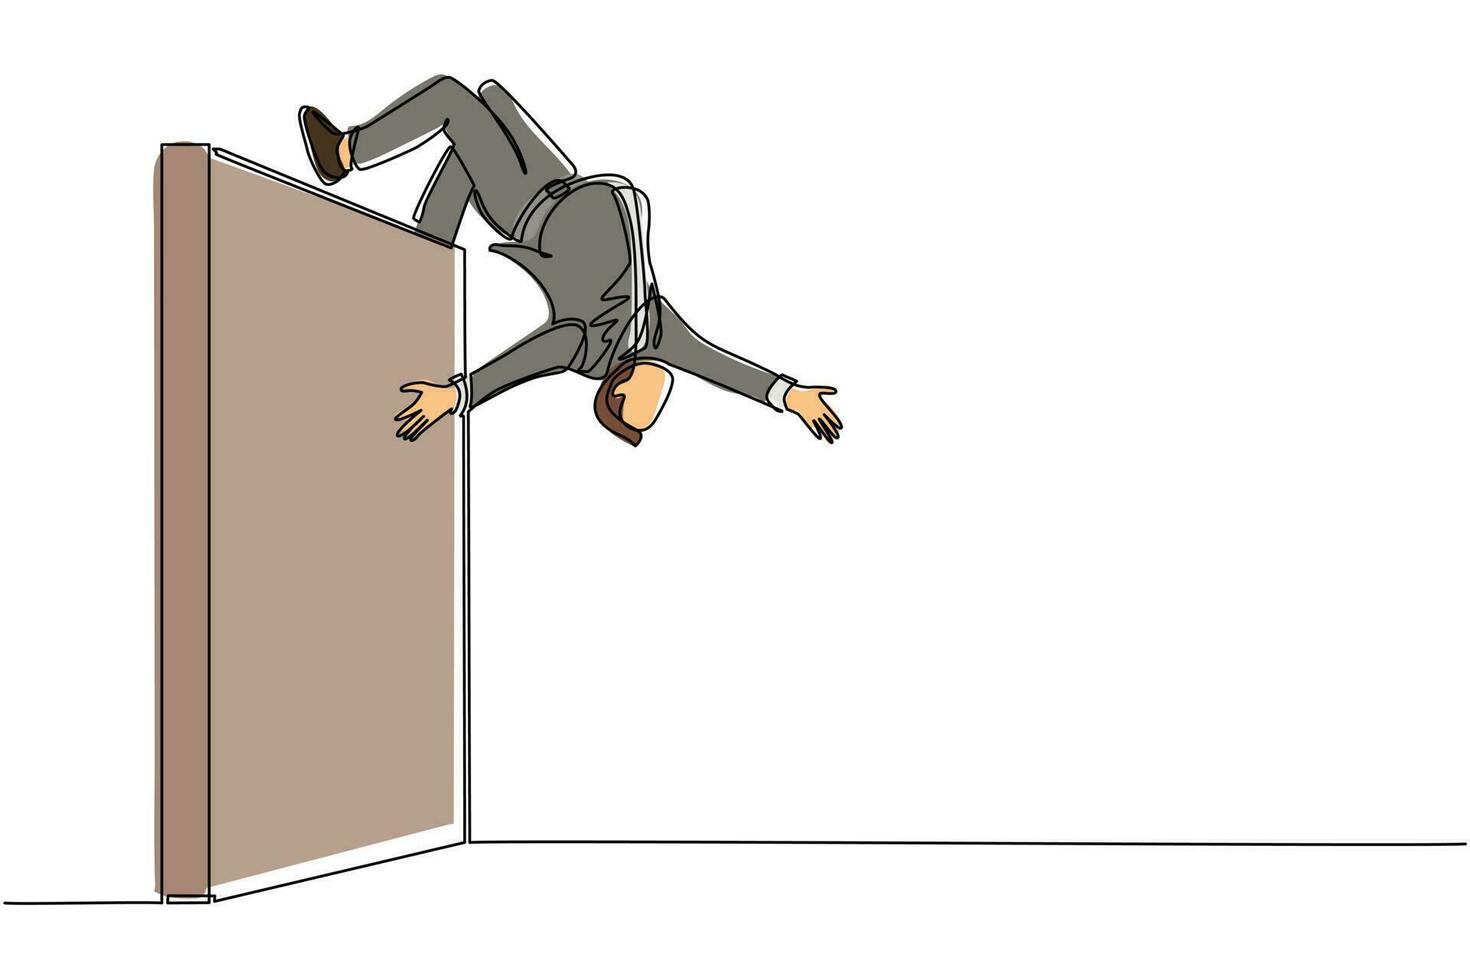 enkele een lijntekening zakenman springen over bakstenen muur met acrobatische overhead stijl om zijn doel te bereiken. zakenman springen over de muur van barrières. moderne ononderbroken lijntekening ontwerp vector